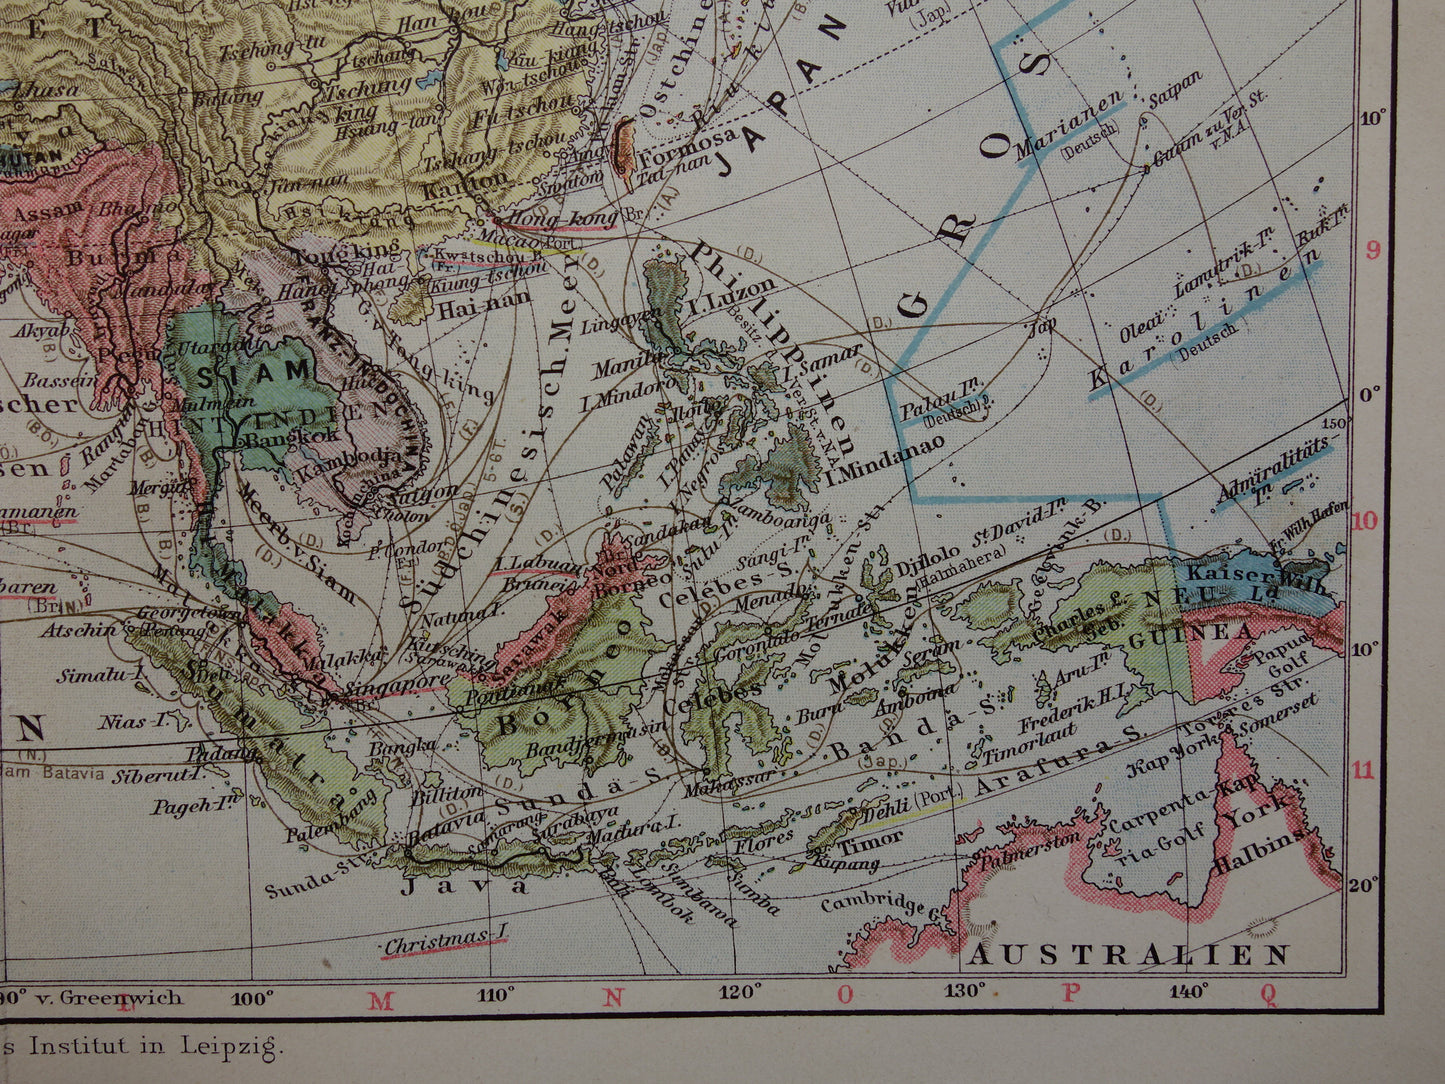 AZIË oude landkaart van continent Azië uit 1913 originele antieke kaart